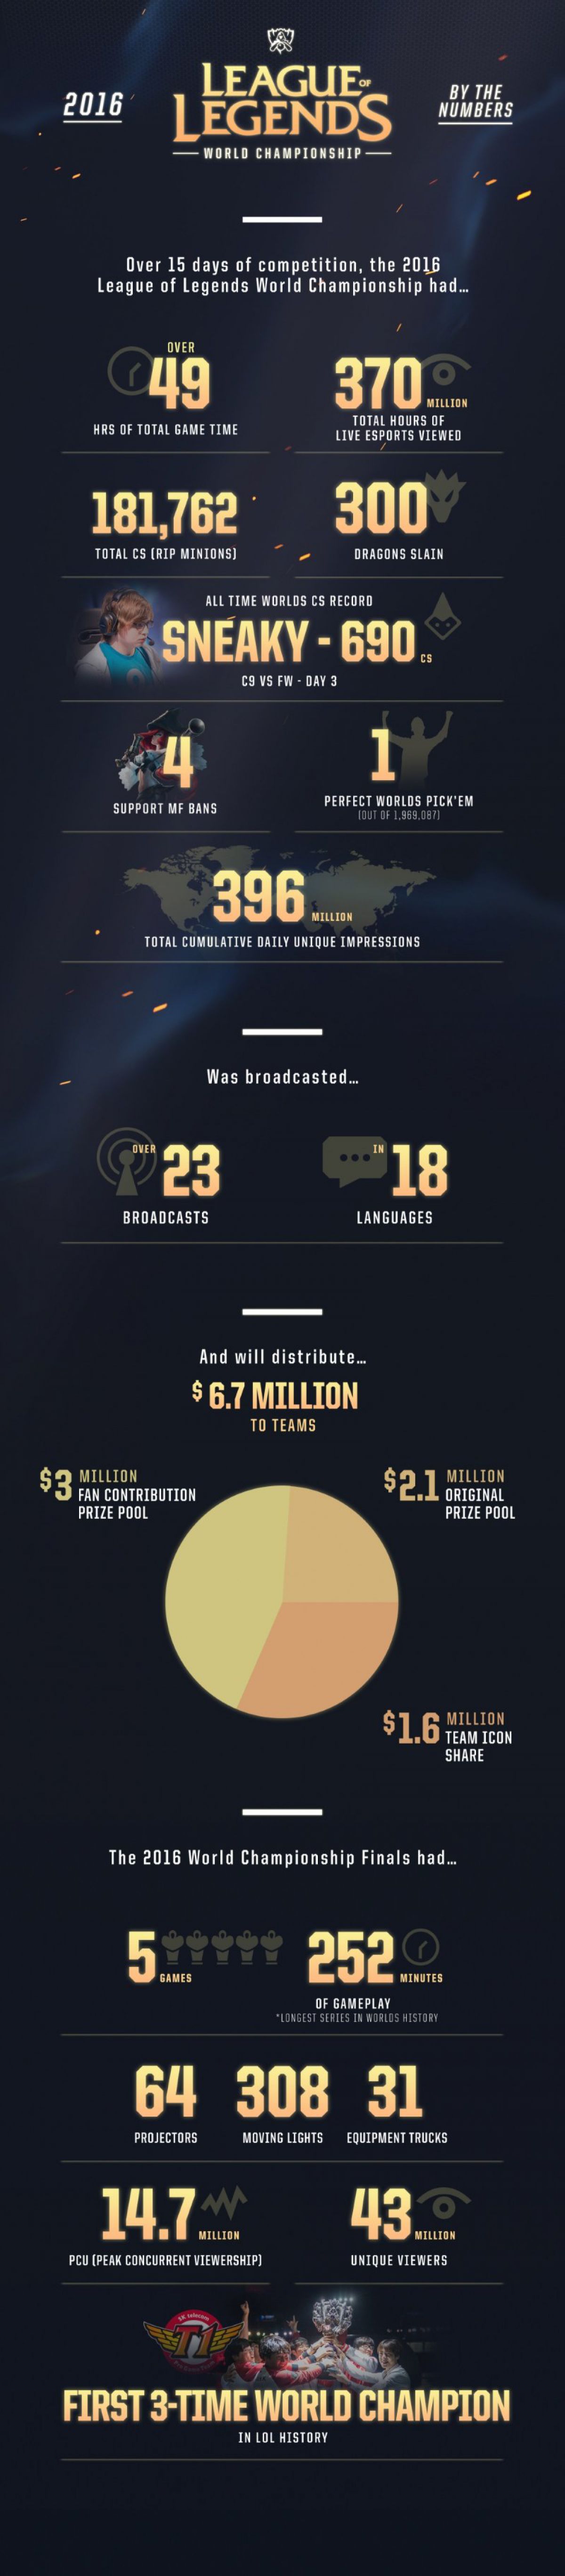 Призовой фонд League of Legends World Championship 2016 составил $6.7 миллионов